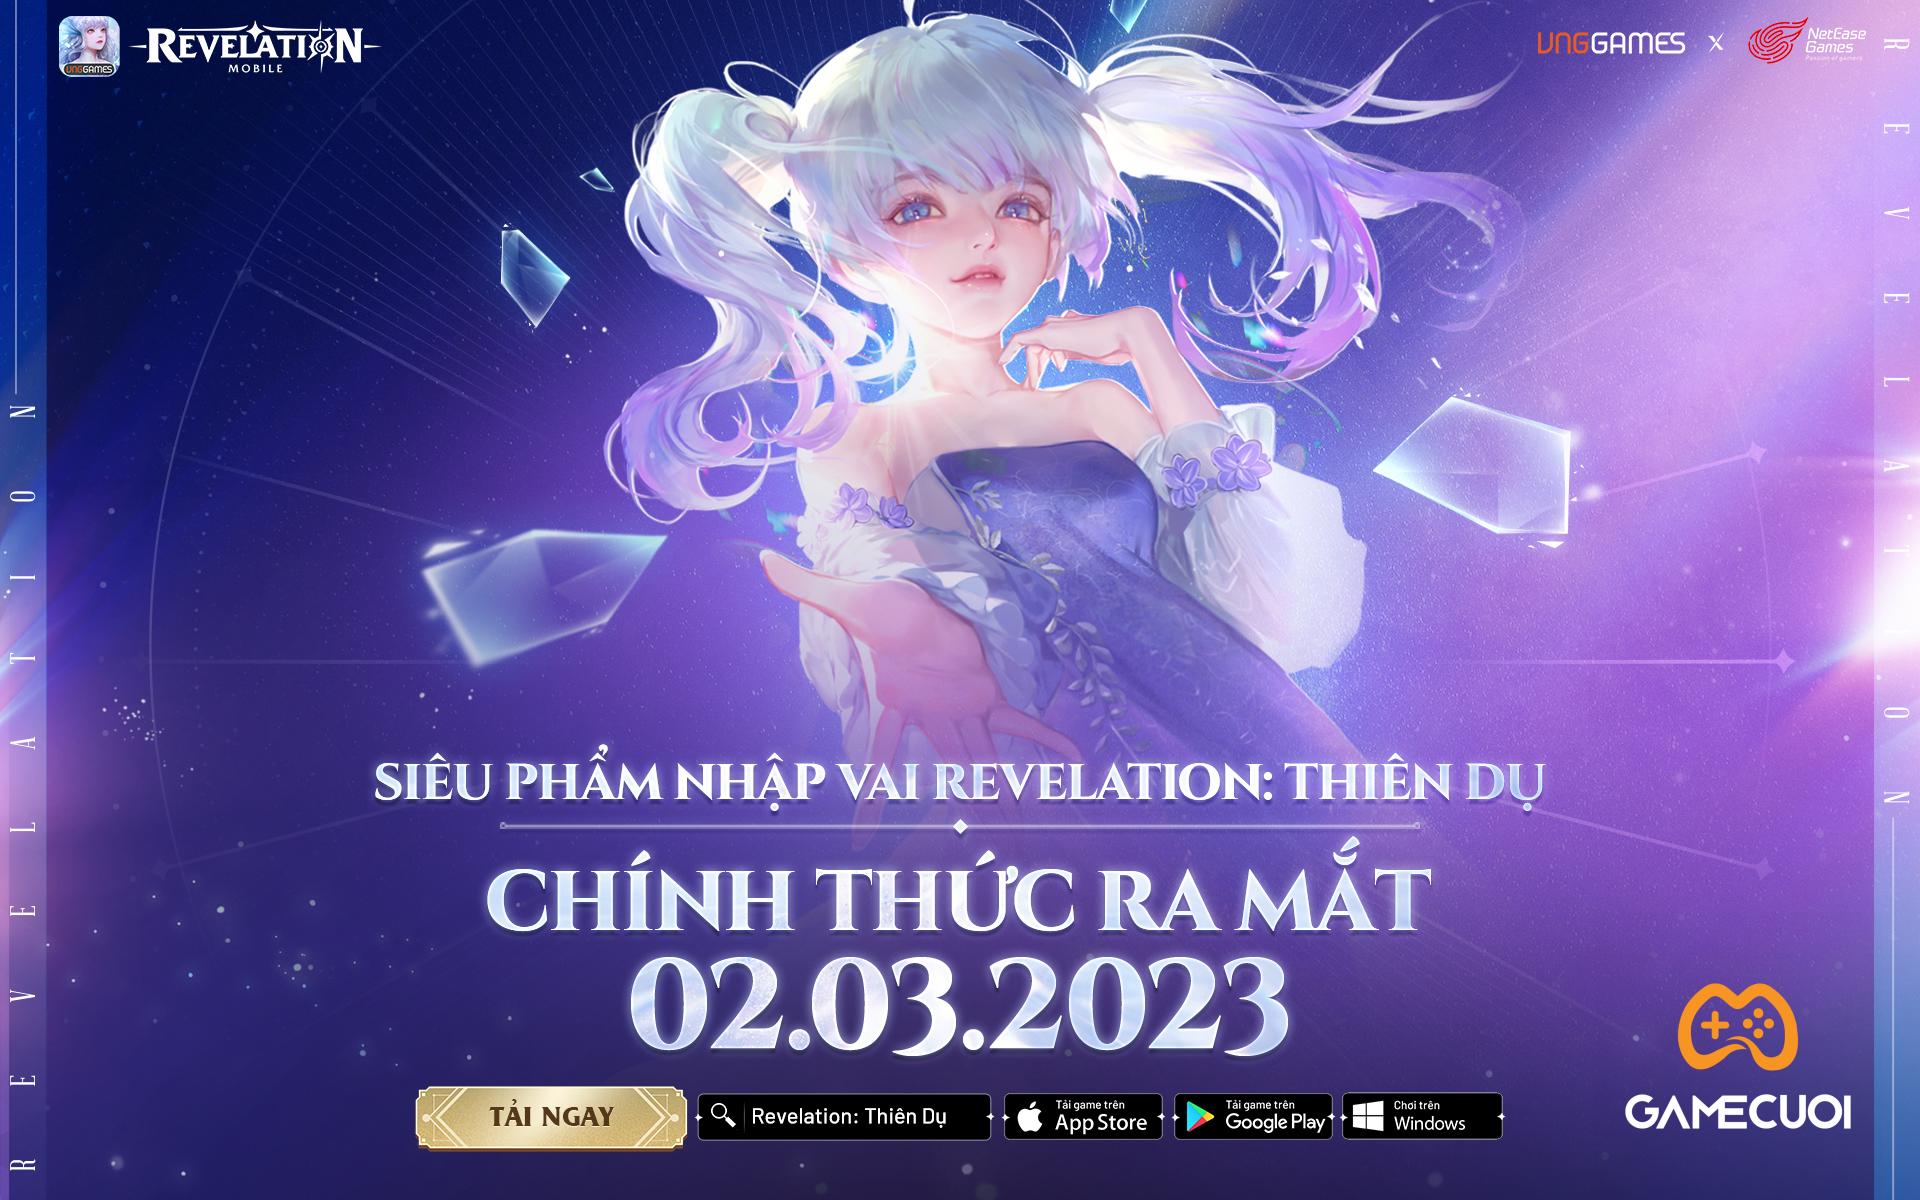 Siêu Phẩm Revelation: Thiên Dụ chính thức được VNG phát hành tại VN và Đông Nam Á